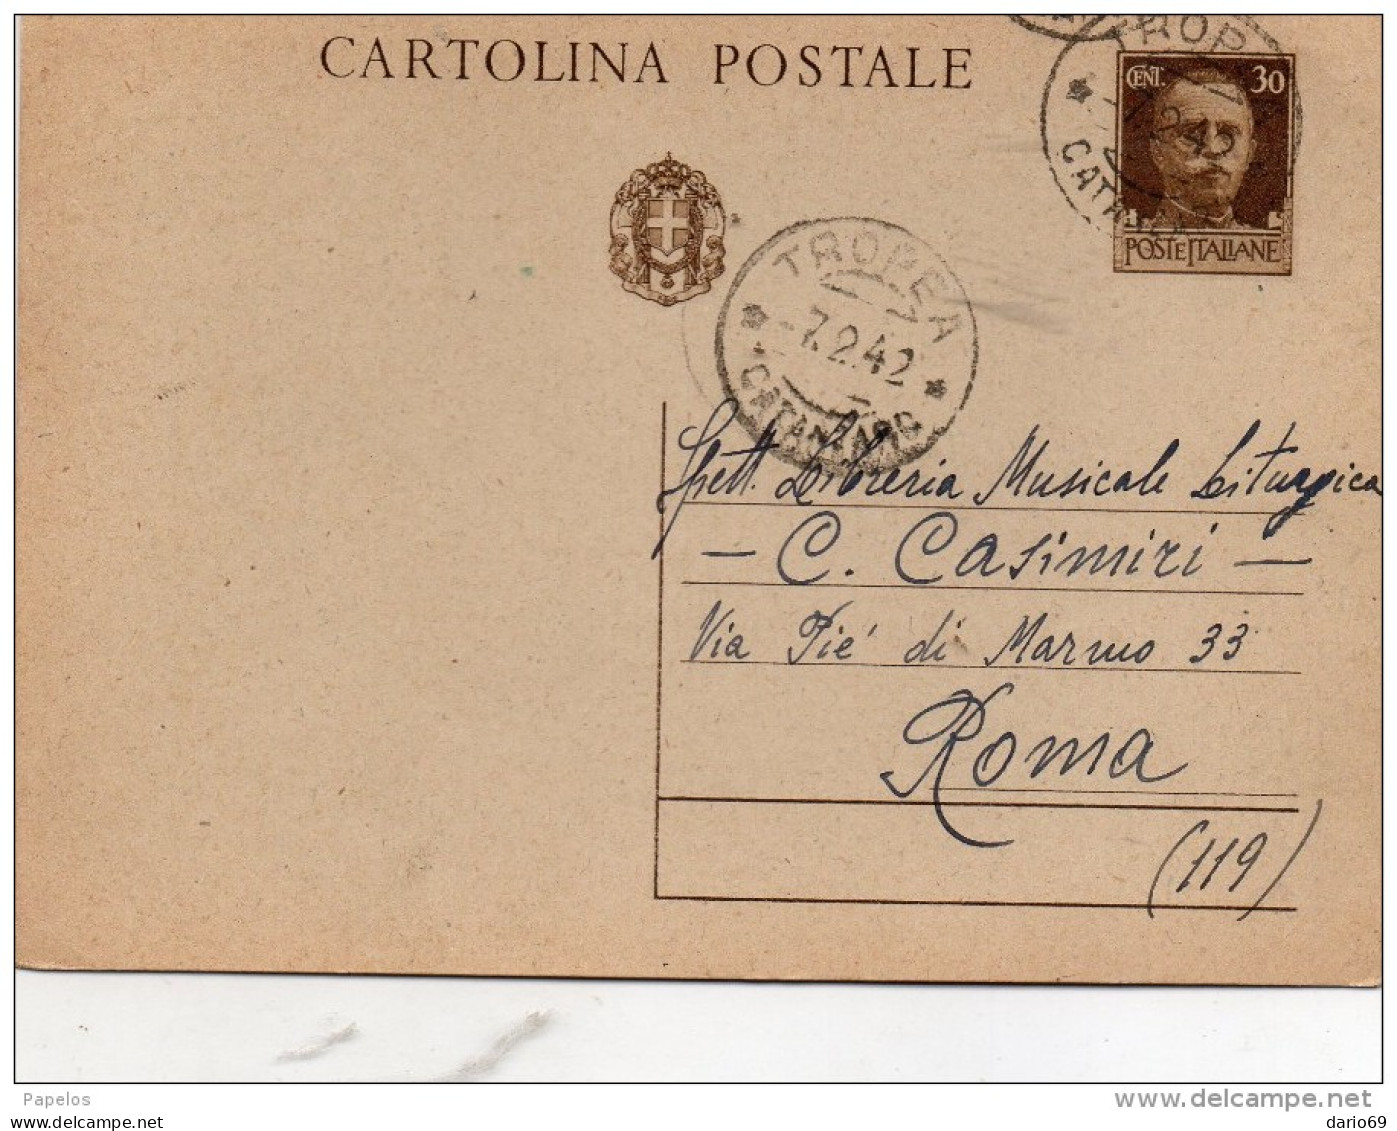 1942  CARTOLINA CON ANNULLO TROPEA CATANZARO - Interi Postali